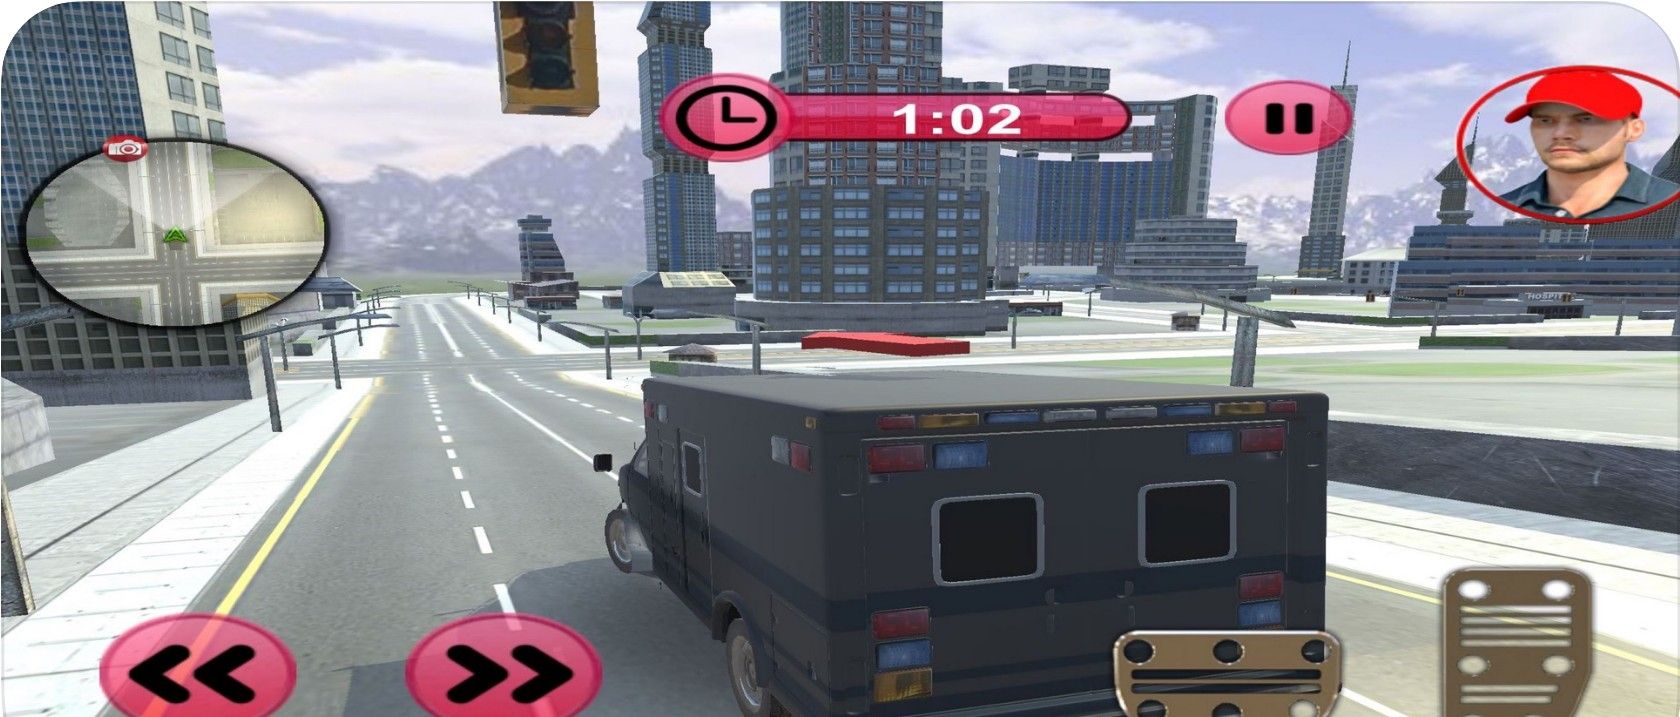 银行货车司机任务游戏图1